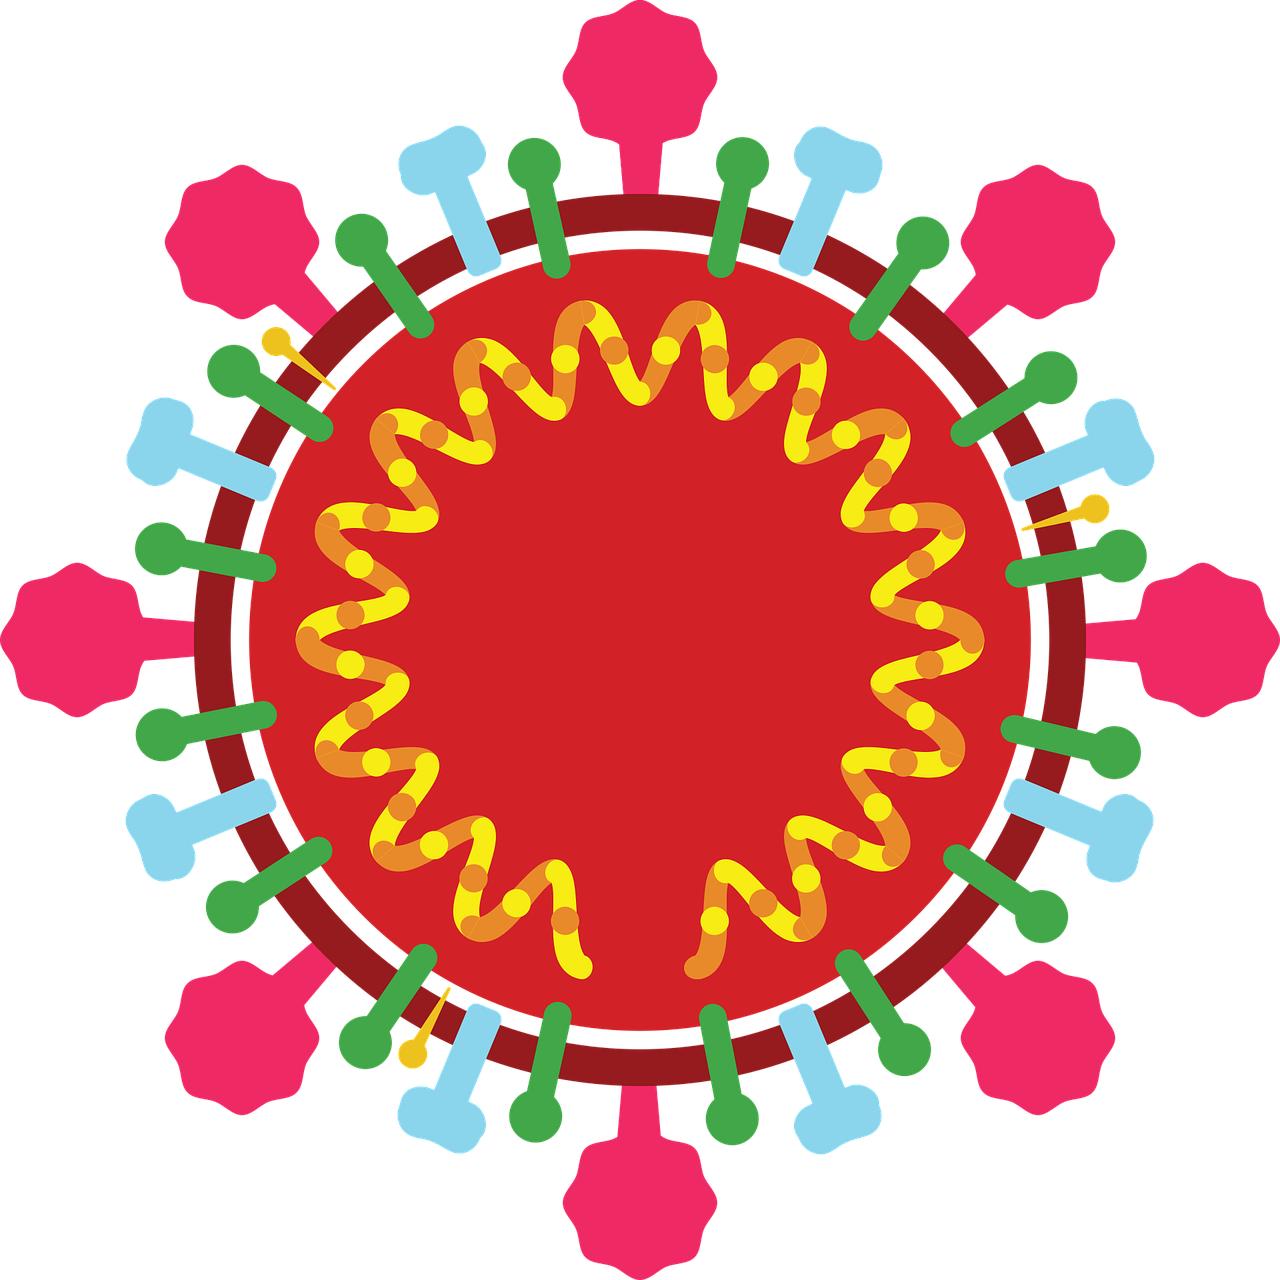 新型冠状病毒(<font color="red">2019-nCoV</font>)感染的肺炎诊疗快速建议指南(完整版)